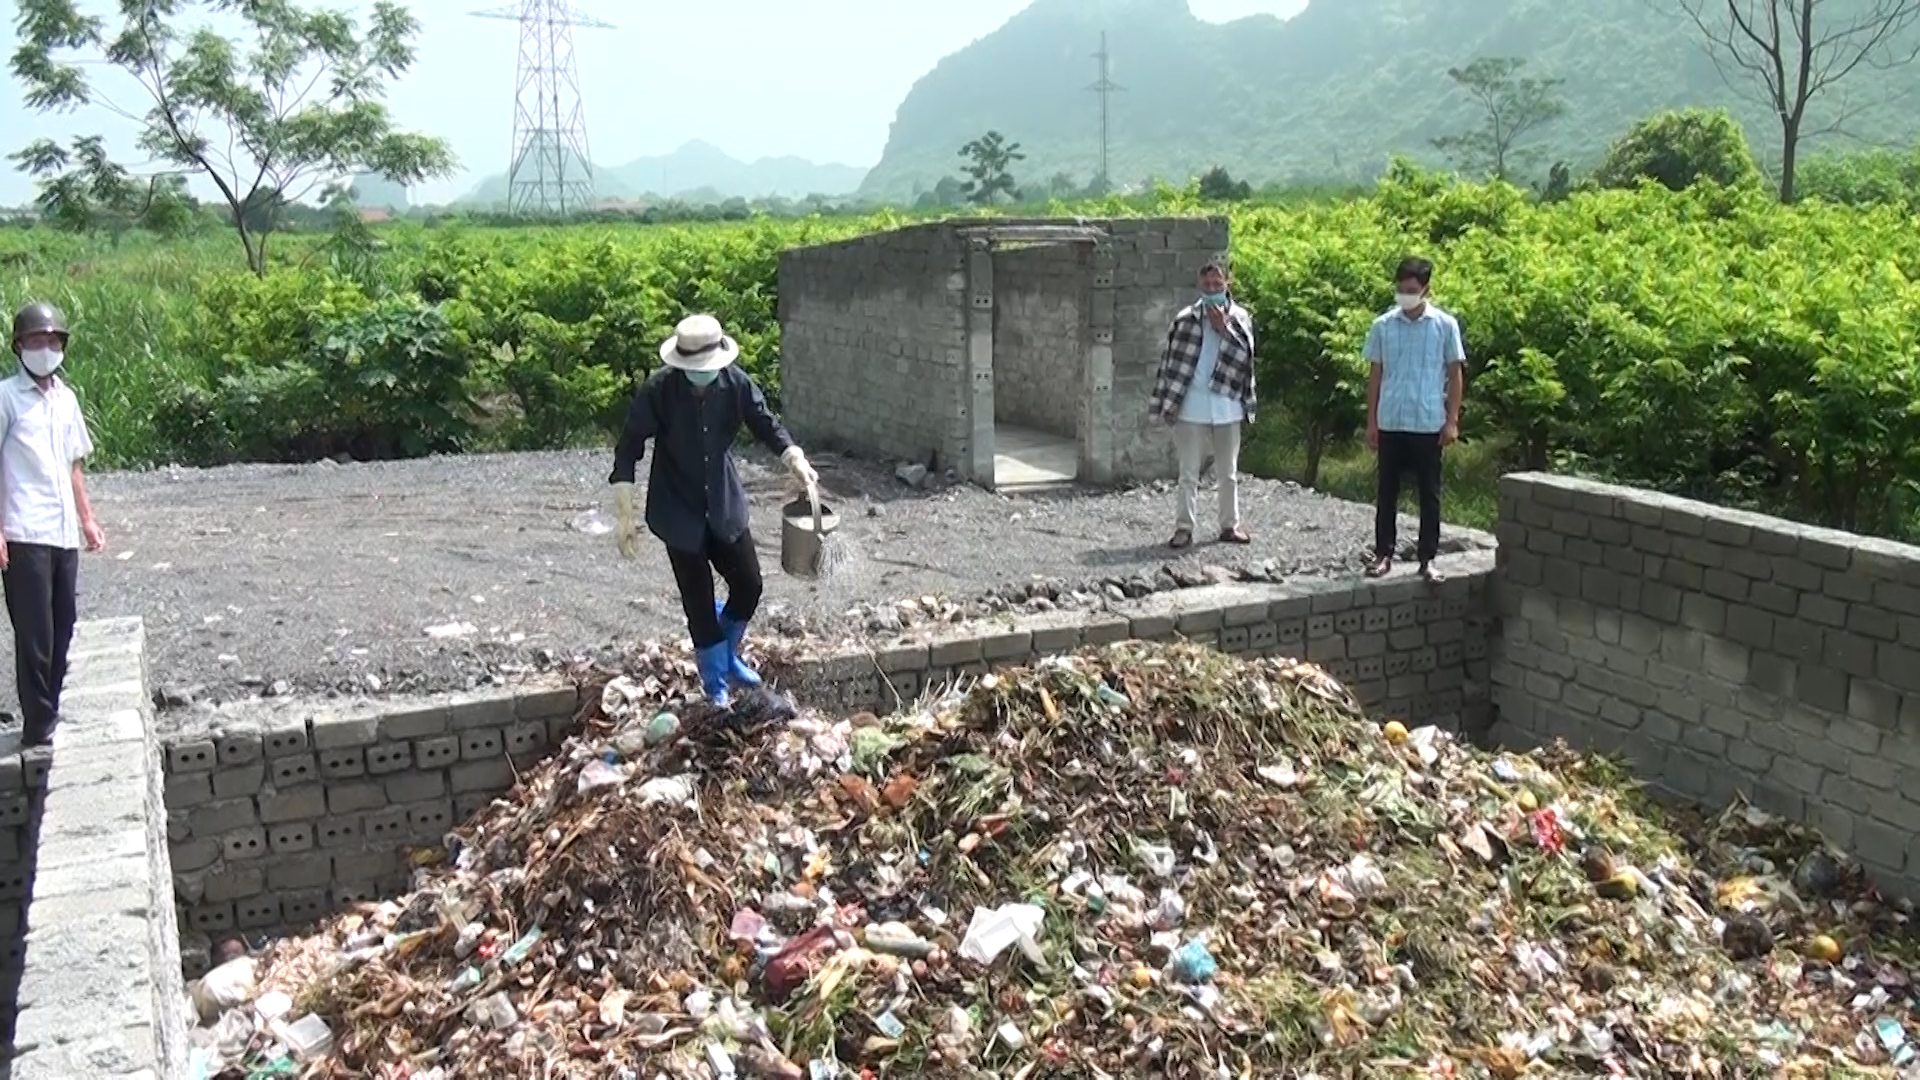 Quy trình ủ rác hữu cơ bằng chế phầm sinh học tại TT Ba Sao.jpg